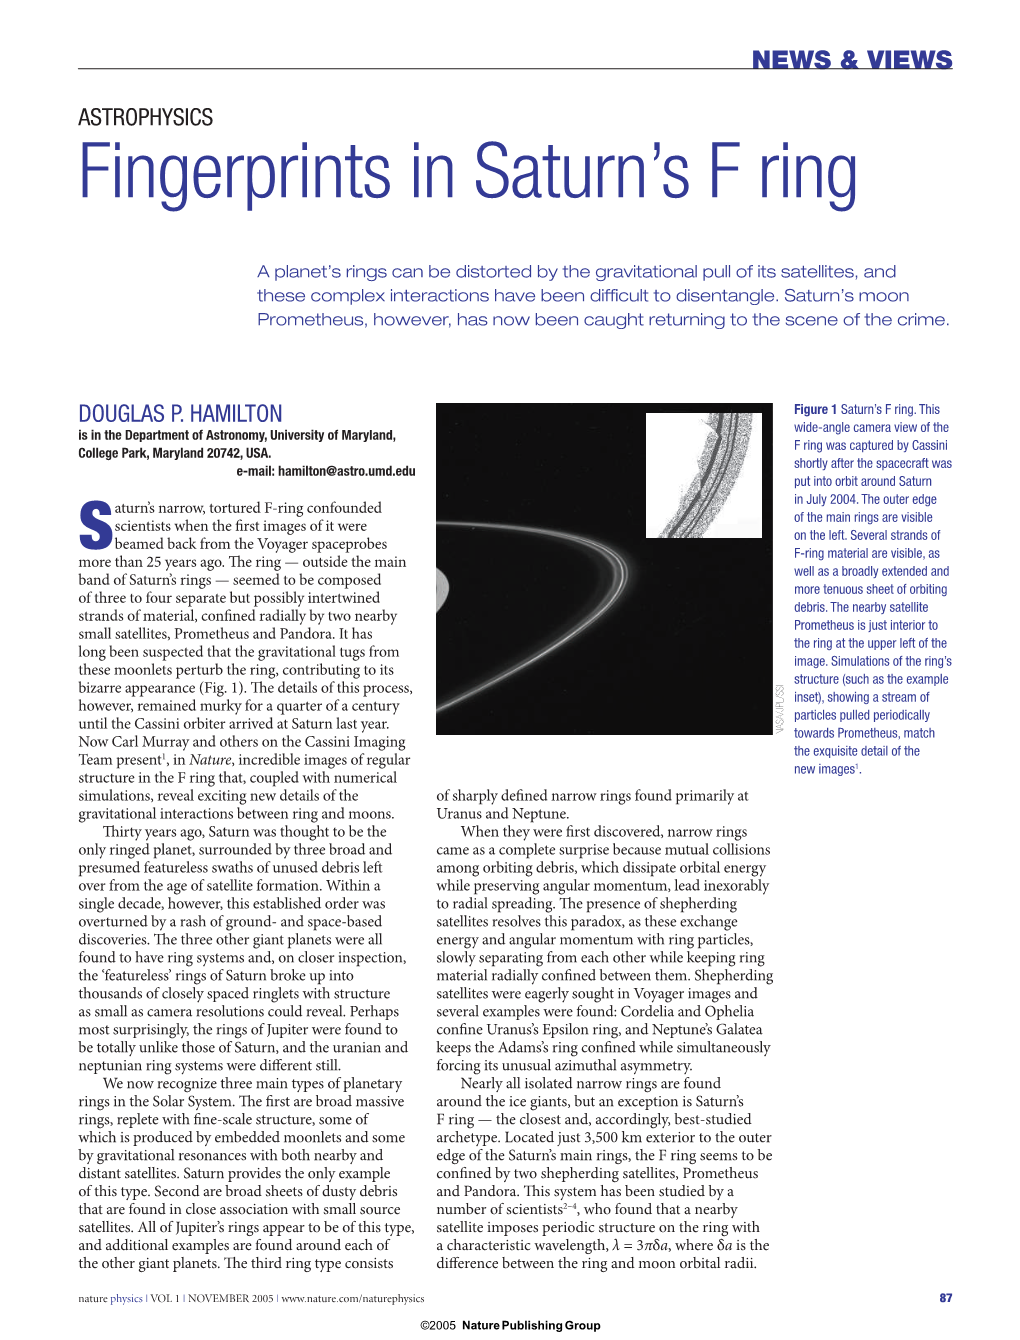 Fingerprints in Saturn's F Ring